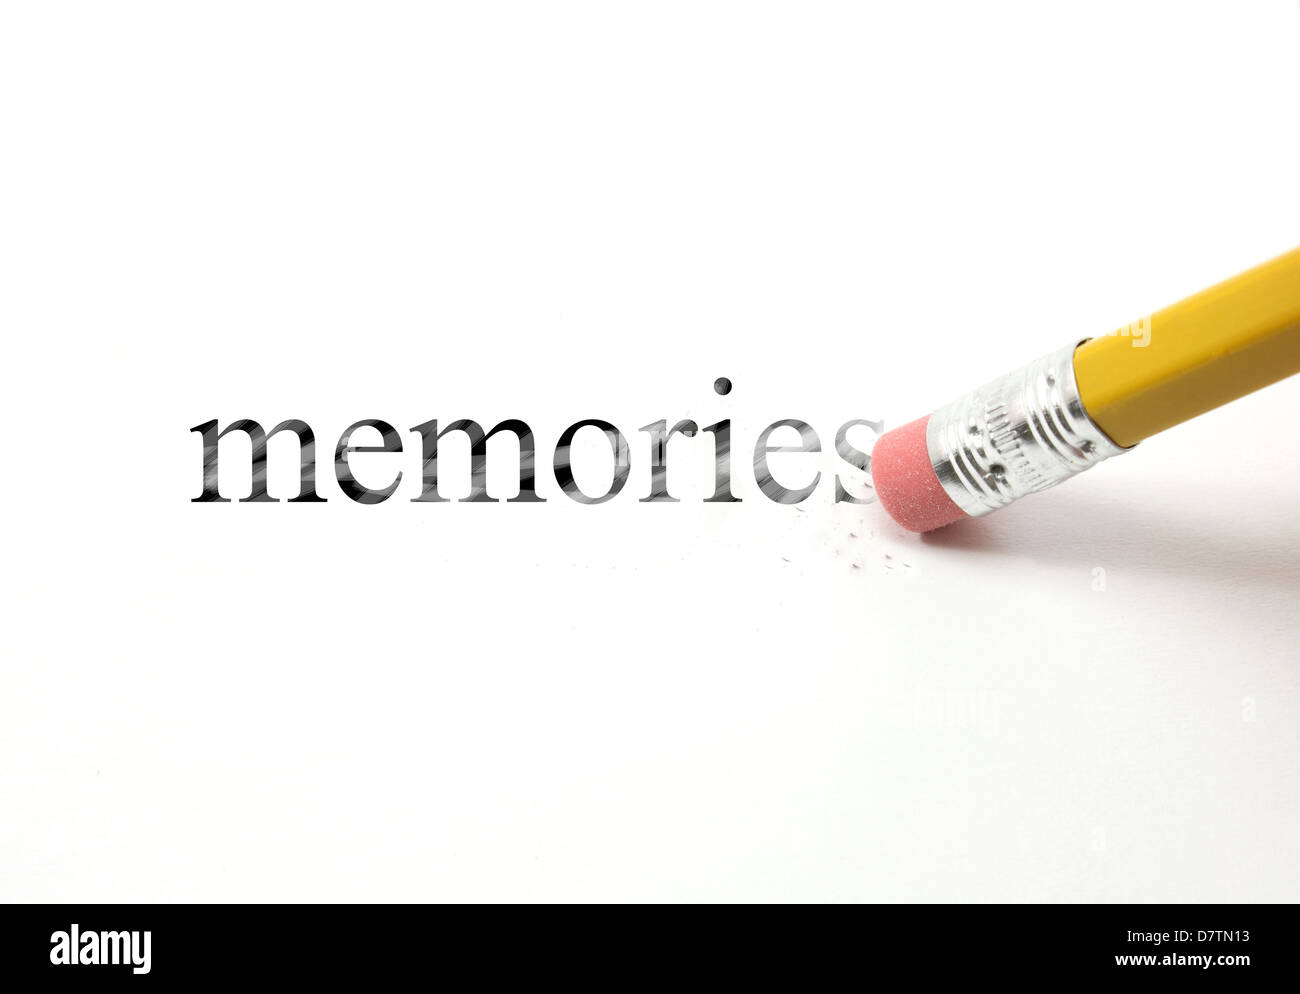 La palabra memorias escritas con un lápiz sobre papel blanco. Un borrador de un lápiz está empezando a borrar la palabra recuerdos. Foto de stock